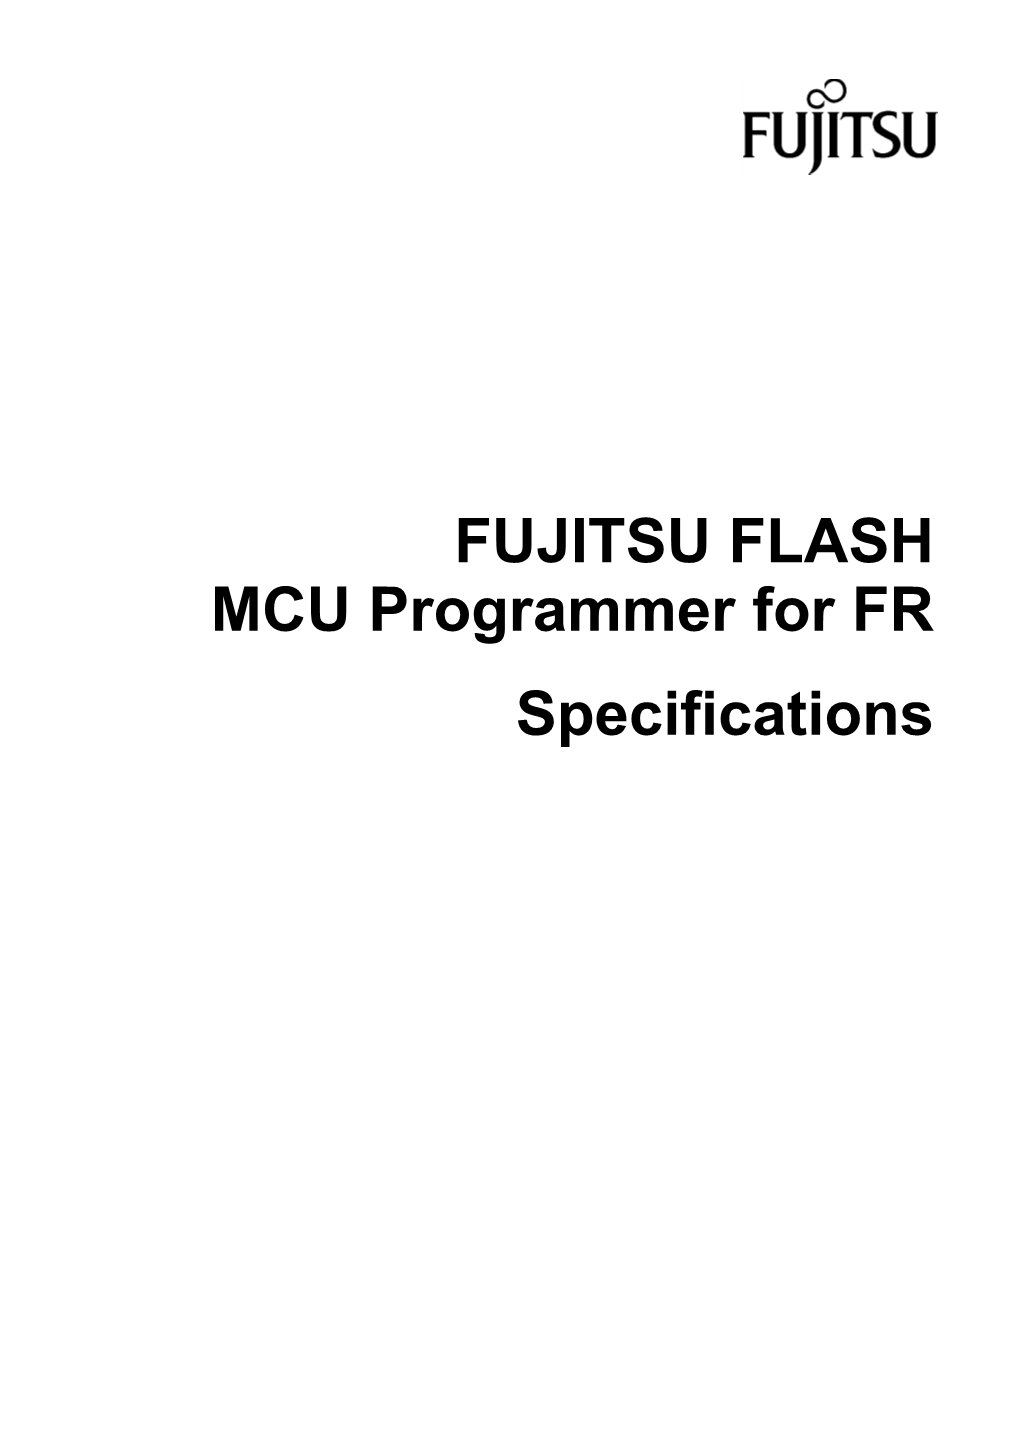 FUJITSU FLASH MCU Programmer for FR Specifications Version 1.9 1 September 2004 Software Version Number: V01L10 ©2002 FUJITSU LIMITED Printed in Japan